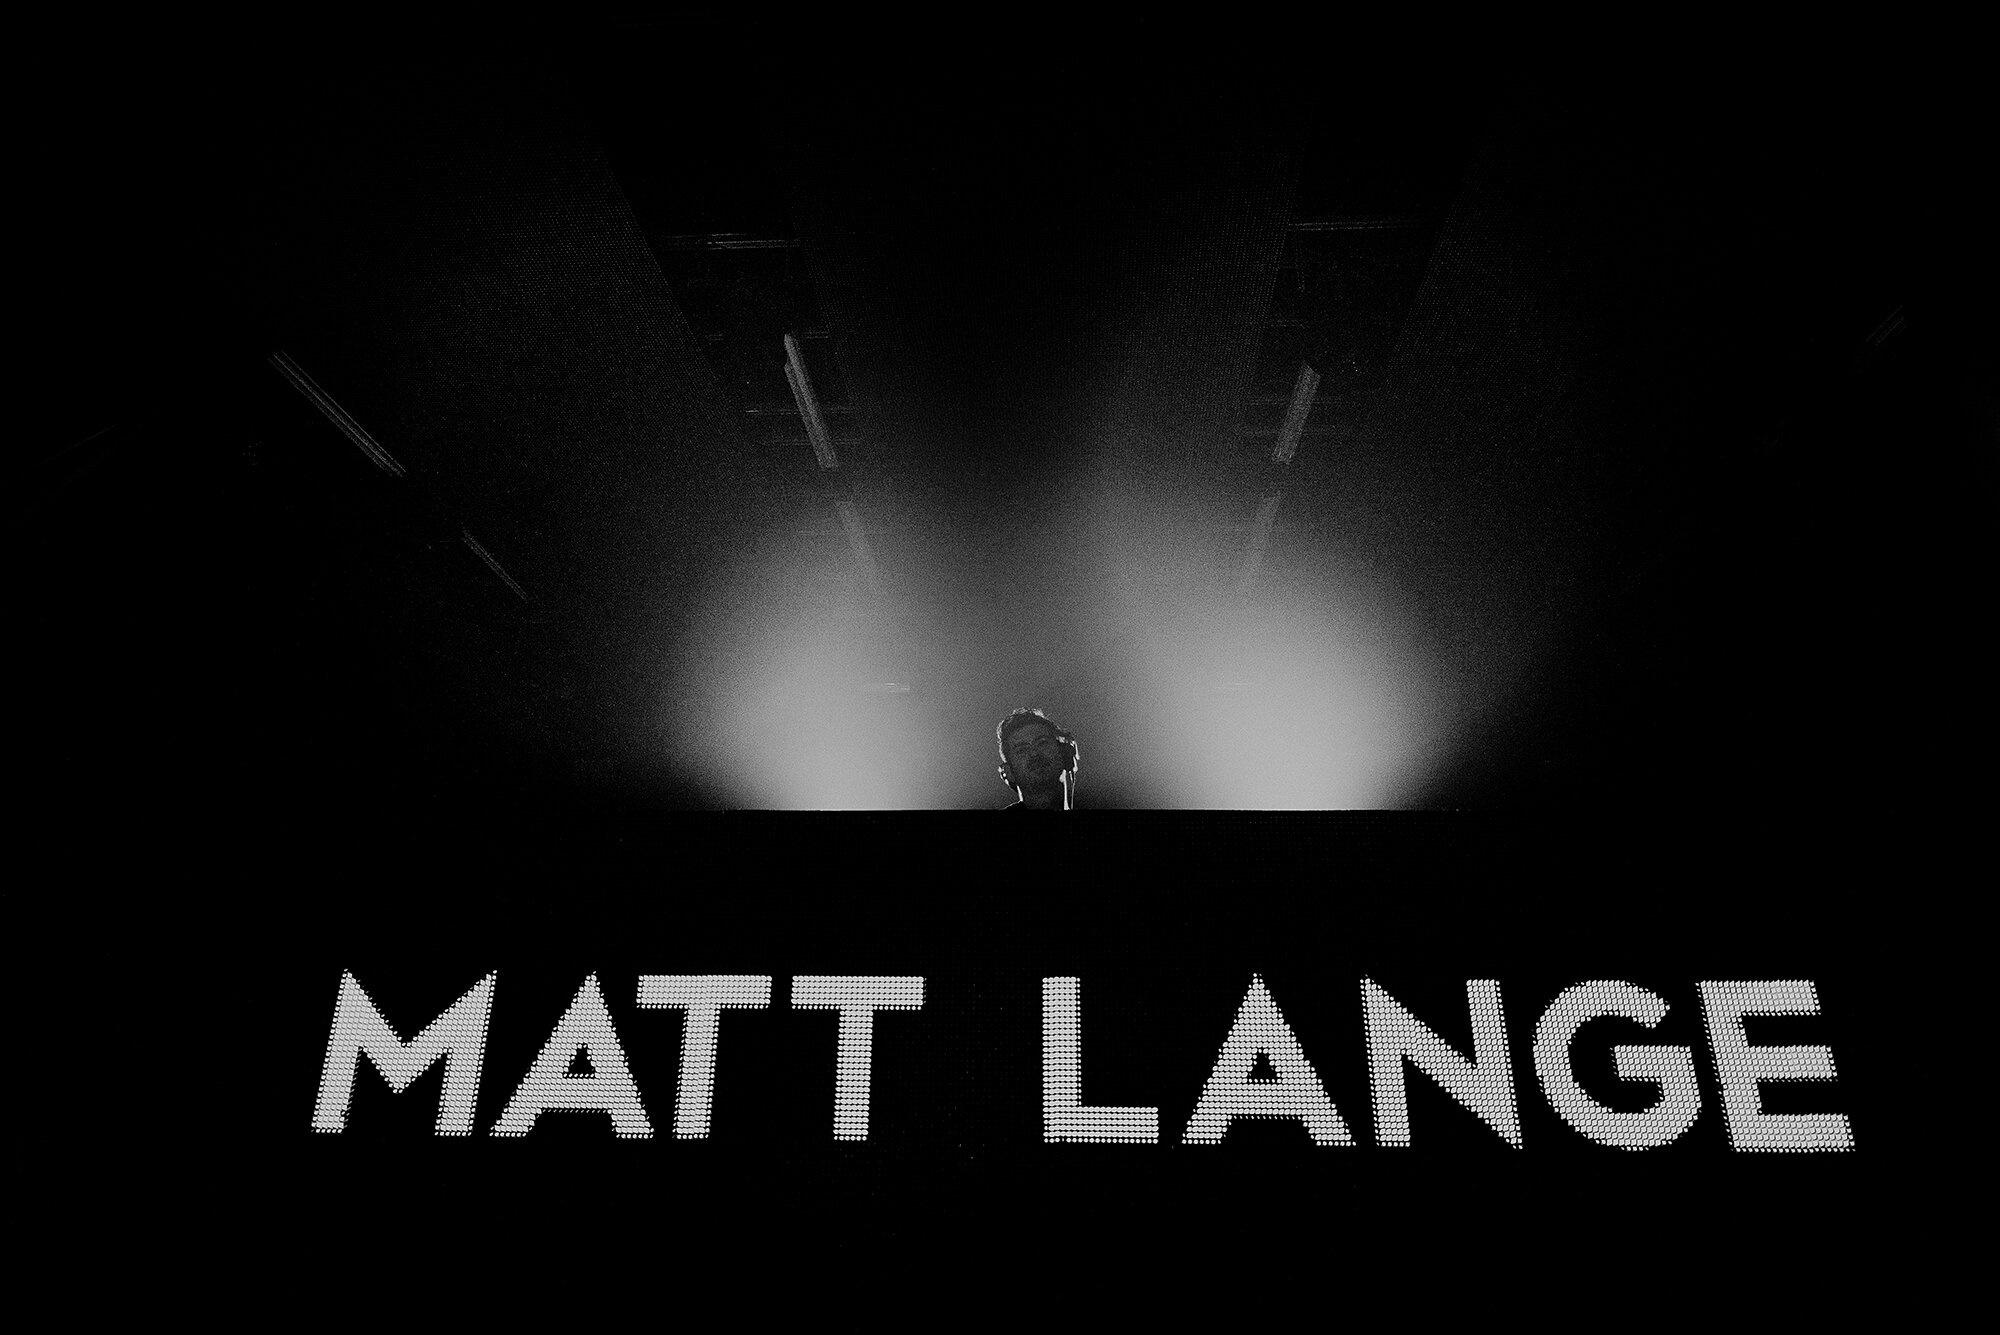 Matt Lange